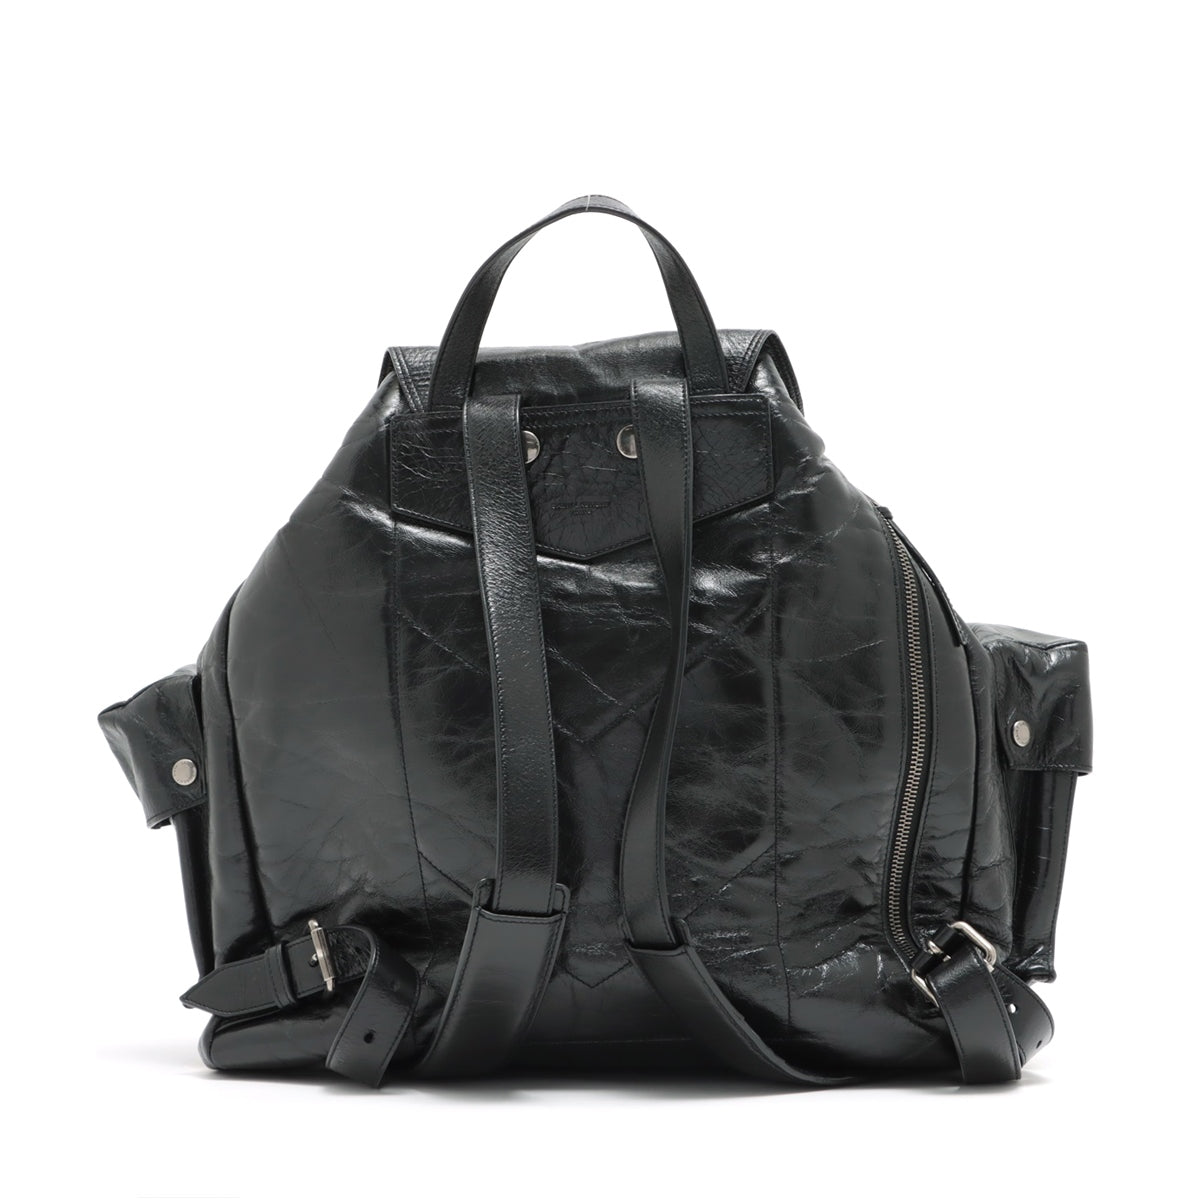 Saint Laurent Paris Leather Backpack Black 491826